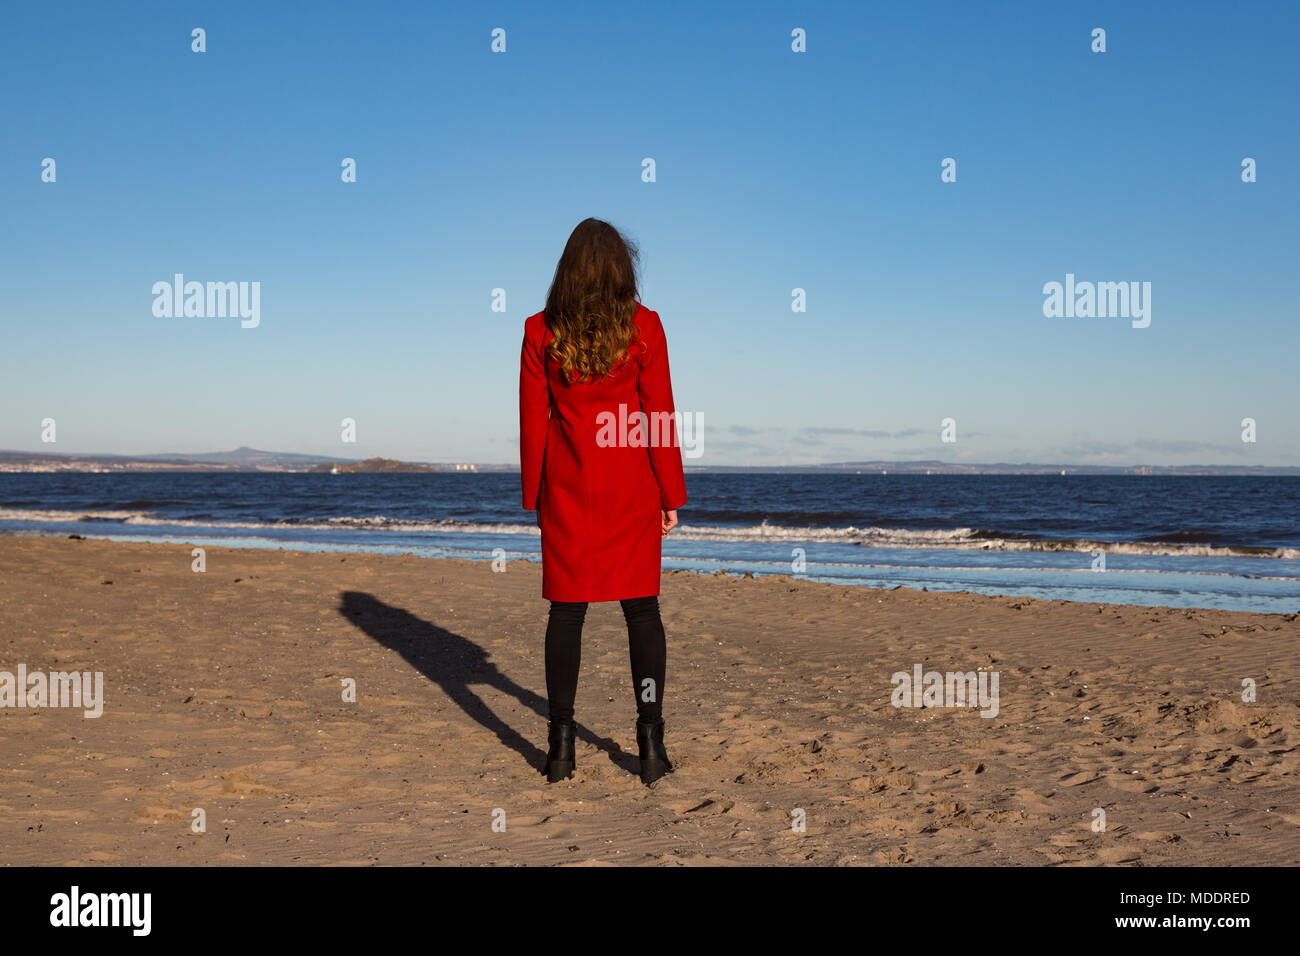 Junge Frau am Strand, trägt eine rote Jacke, mit ihr zurück gedreht, mit Meerblick. Querformat. Stockfoto